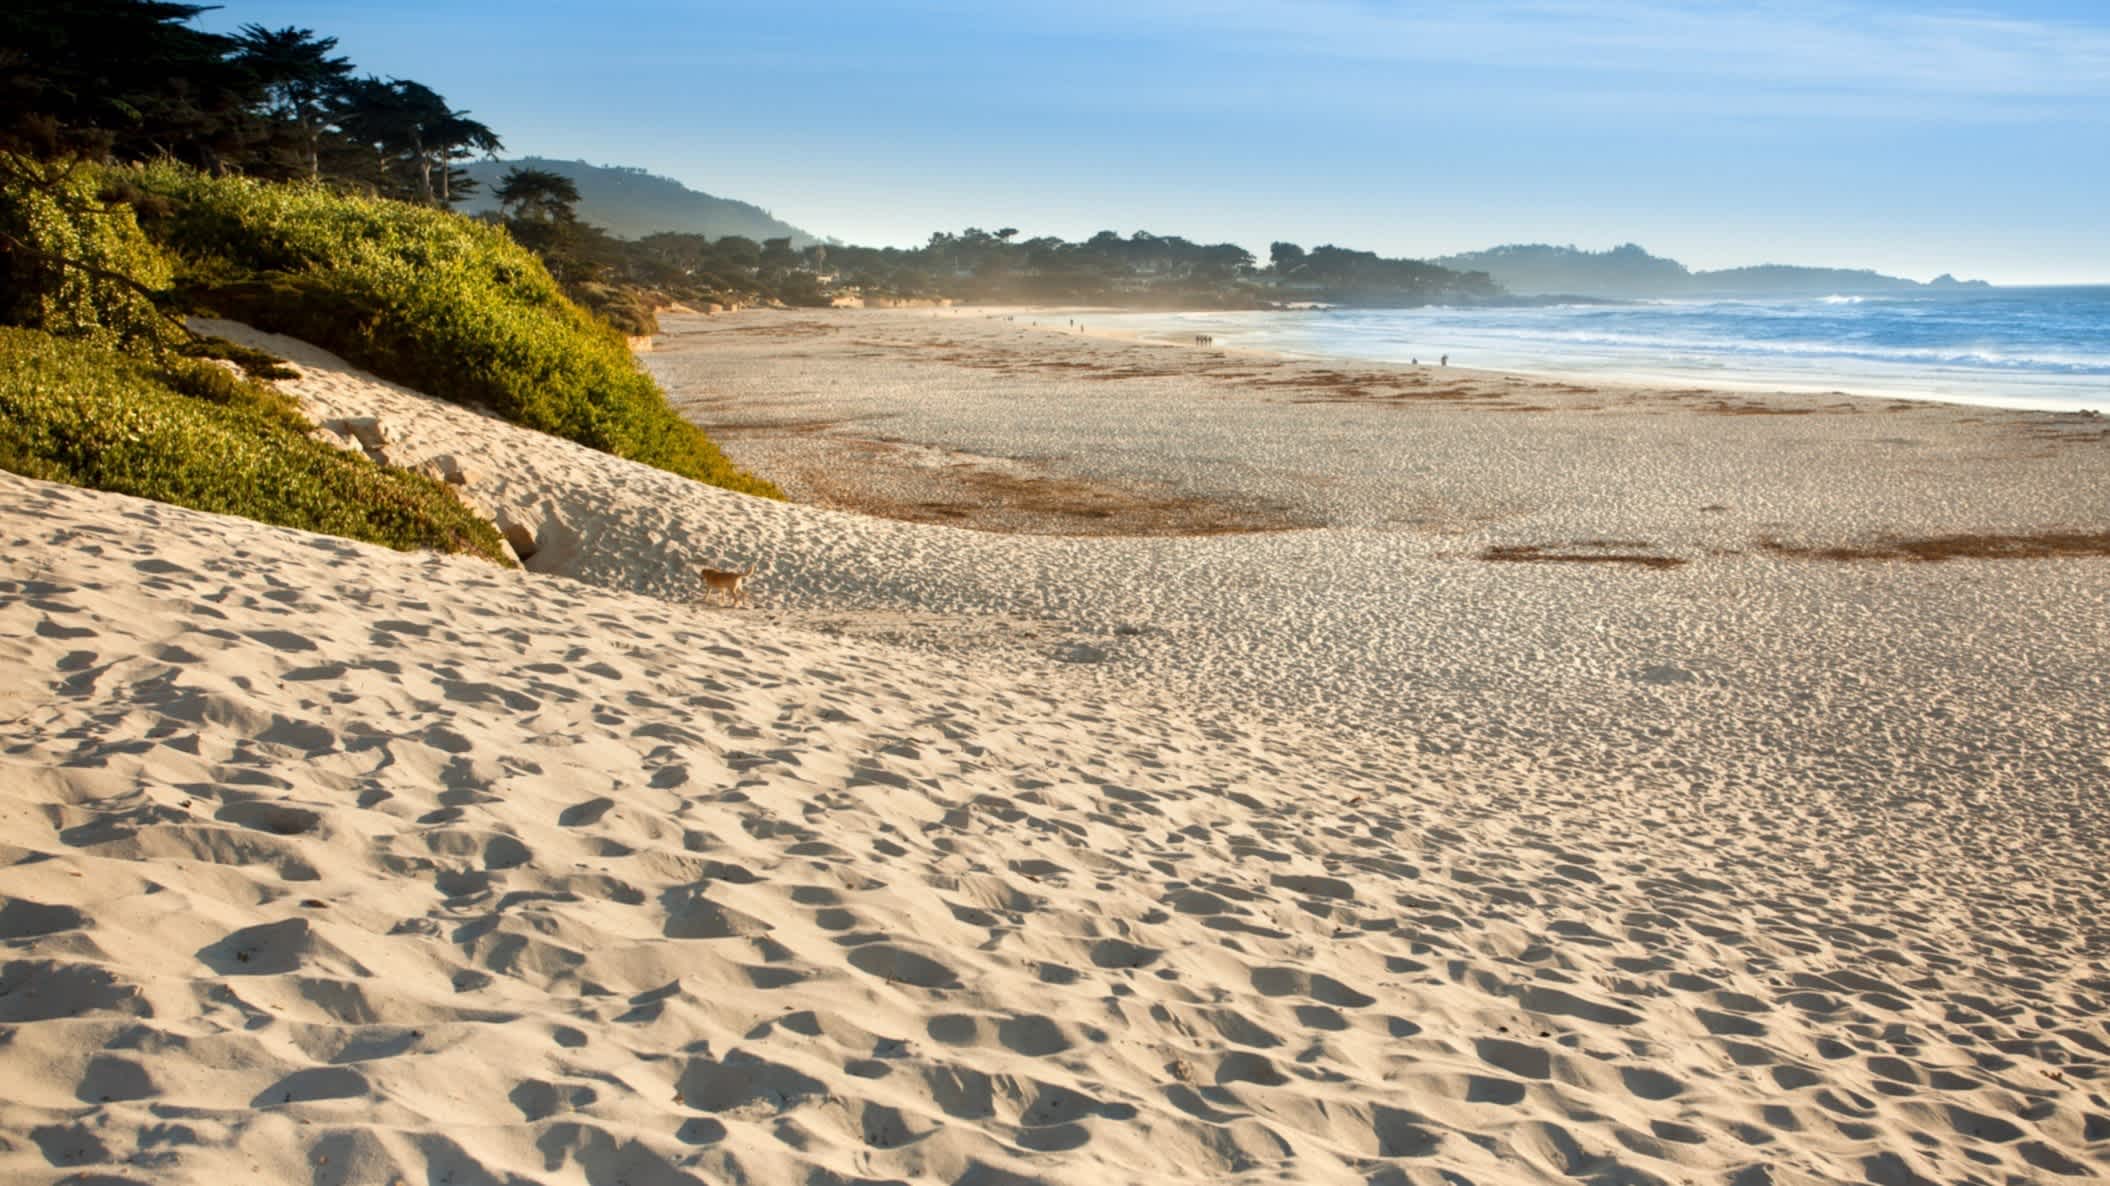 Der Strand Carmel Beach, Carmel by-the-Sea, Kalifornien, USA bei strahlendem Sonnenschein mit goldenem Sand und natürlich wilder Vegetation